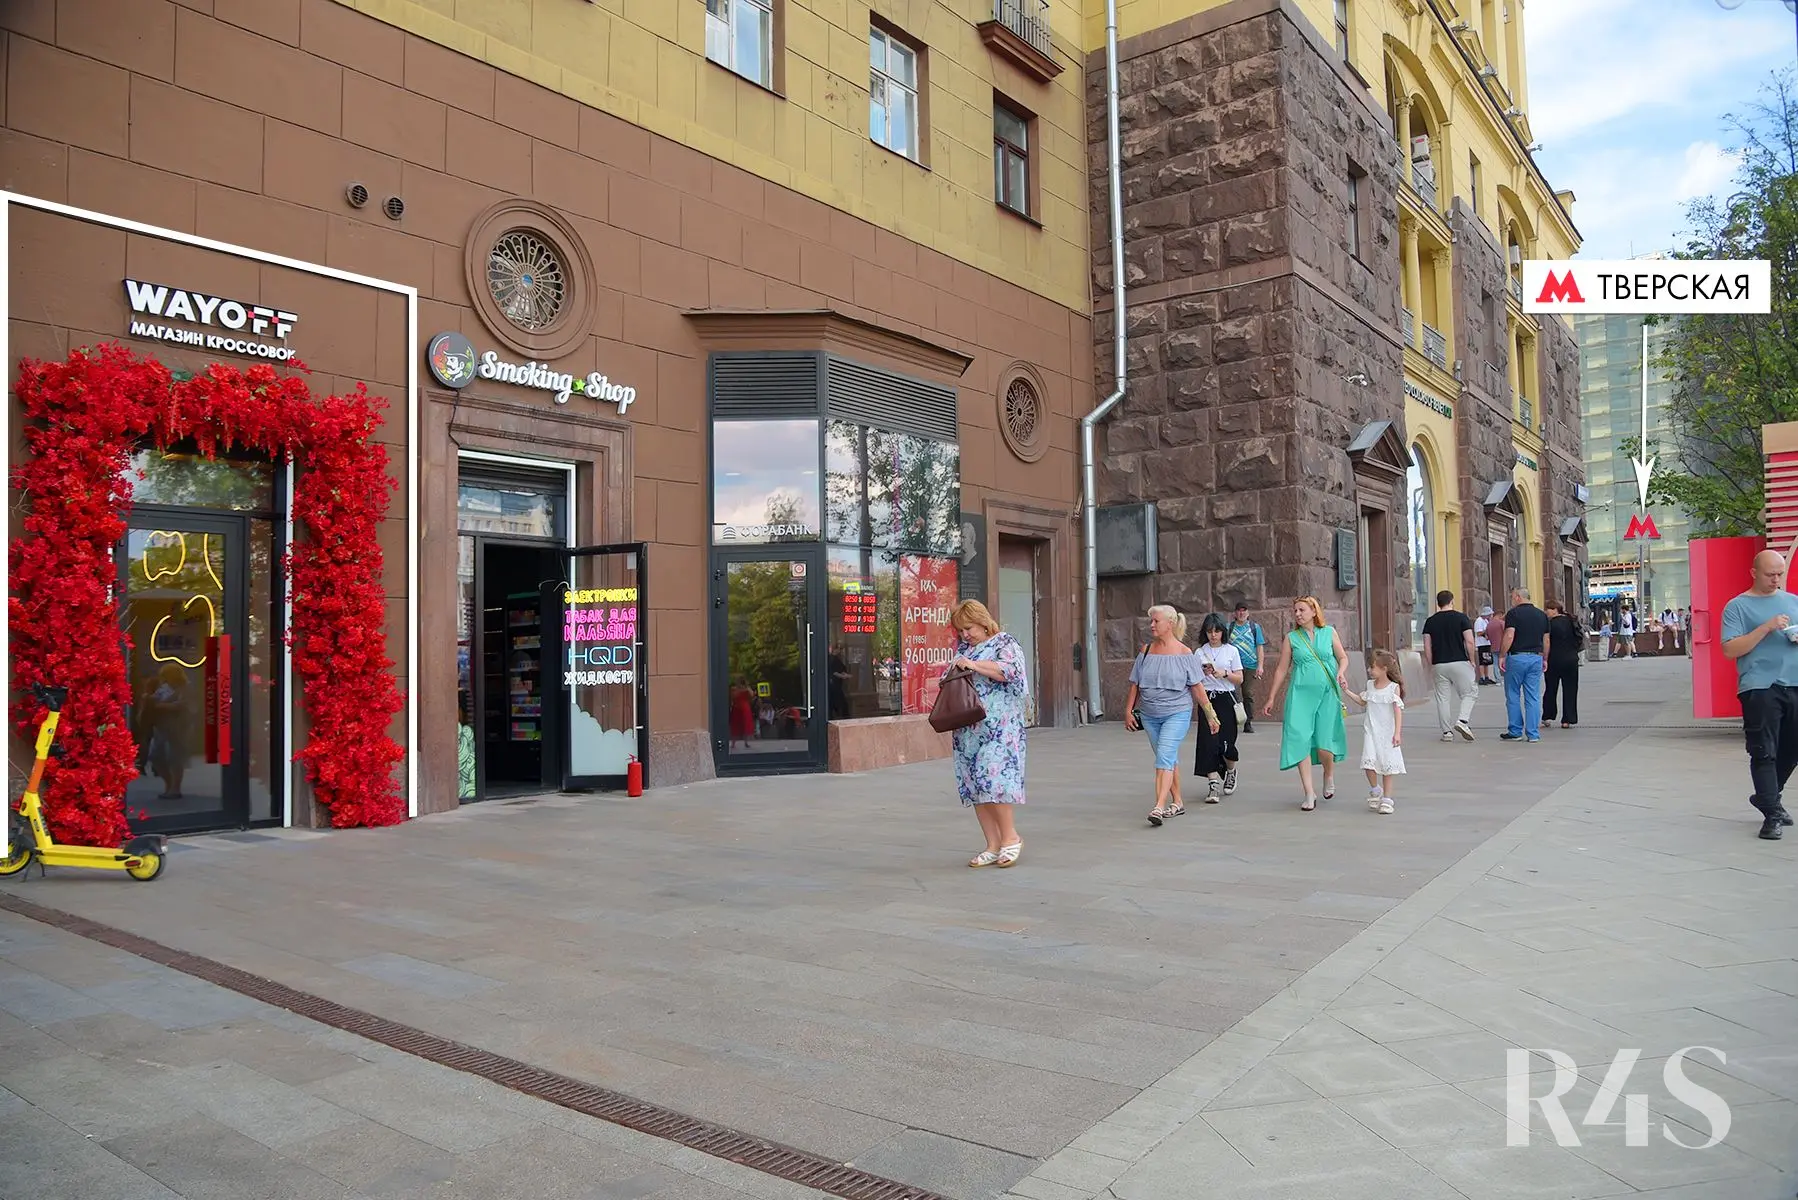 Продажа готового арендного бизнеса площадью 58.4 м2 в Москве: Тверская, 19 R4S | Realty4Sale